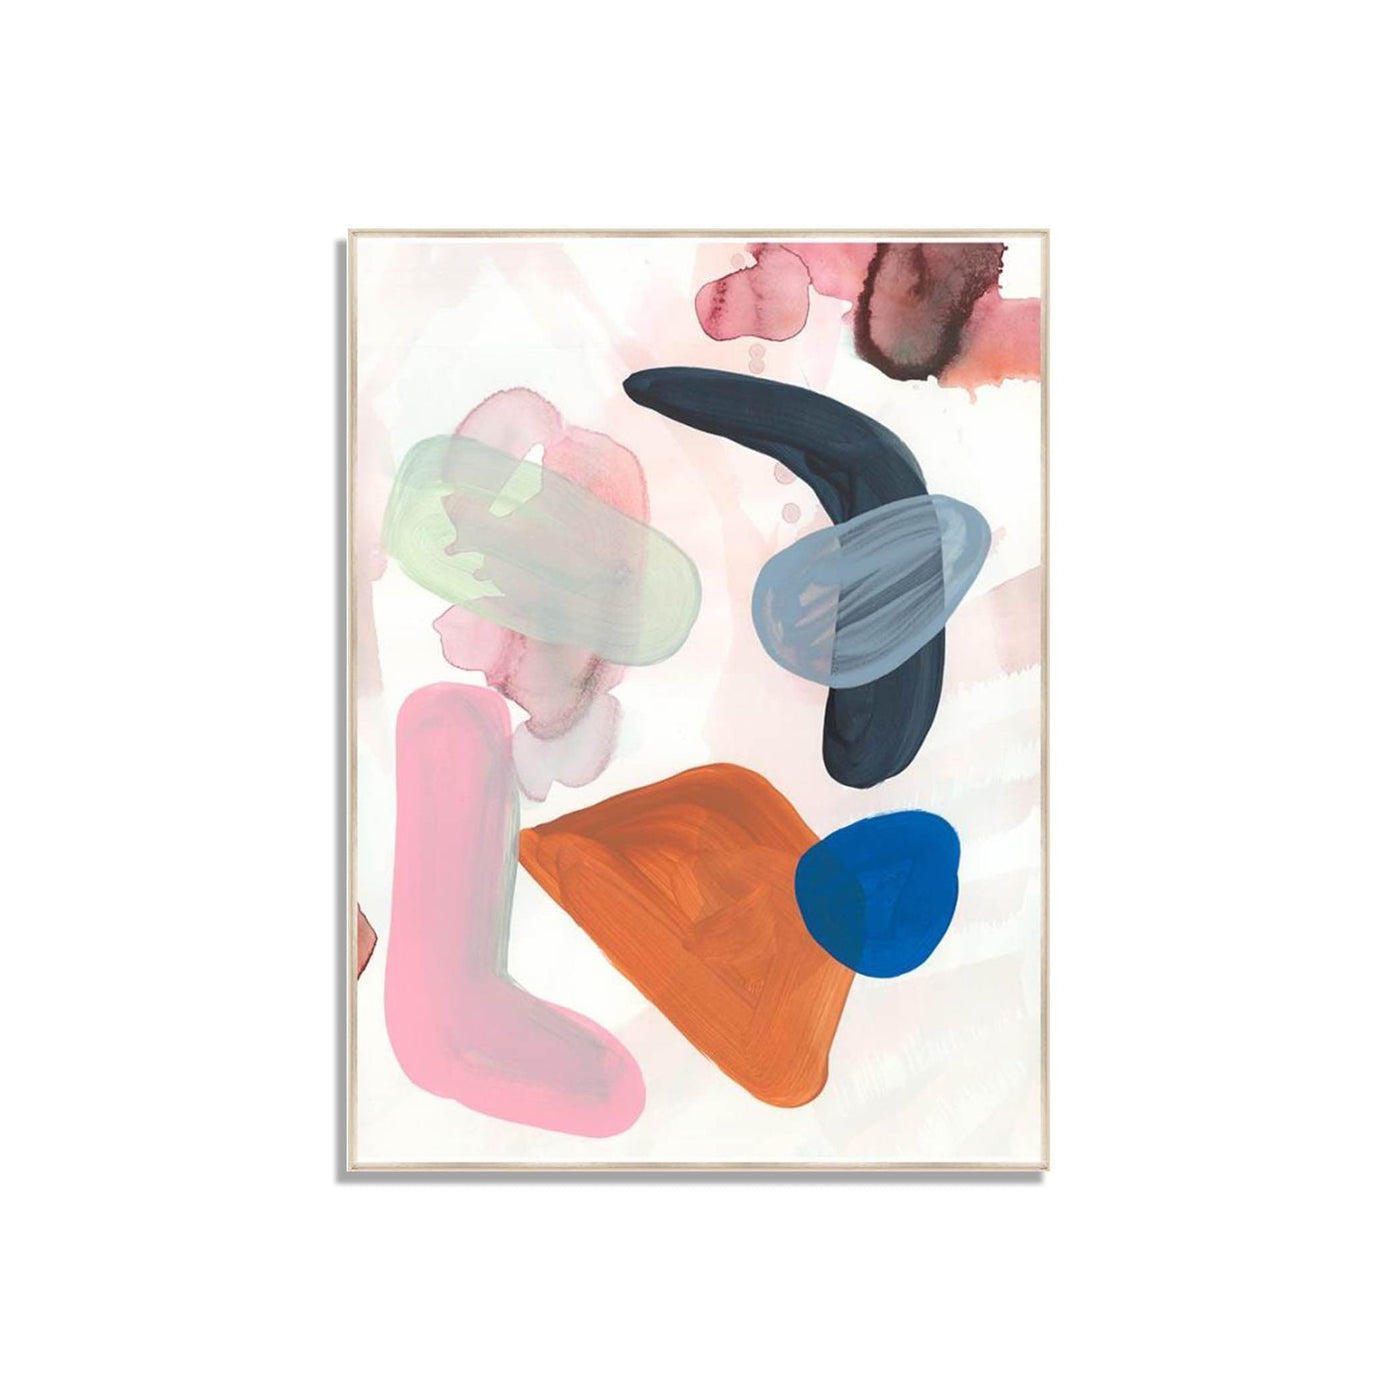 Découvrez l'explosion de couleurs dans 'Rocks' de Danielle Davis : une œuvre captivante qui transcende les frontières de l'art traditionnel.